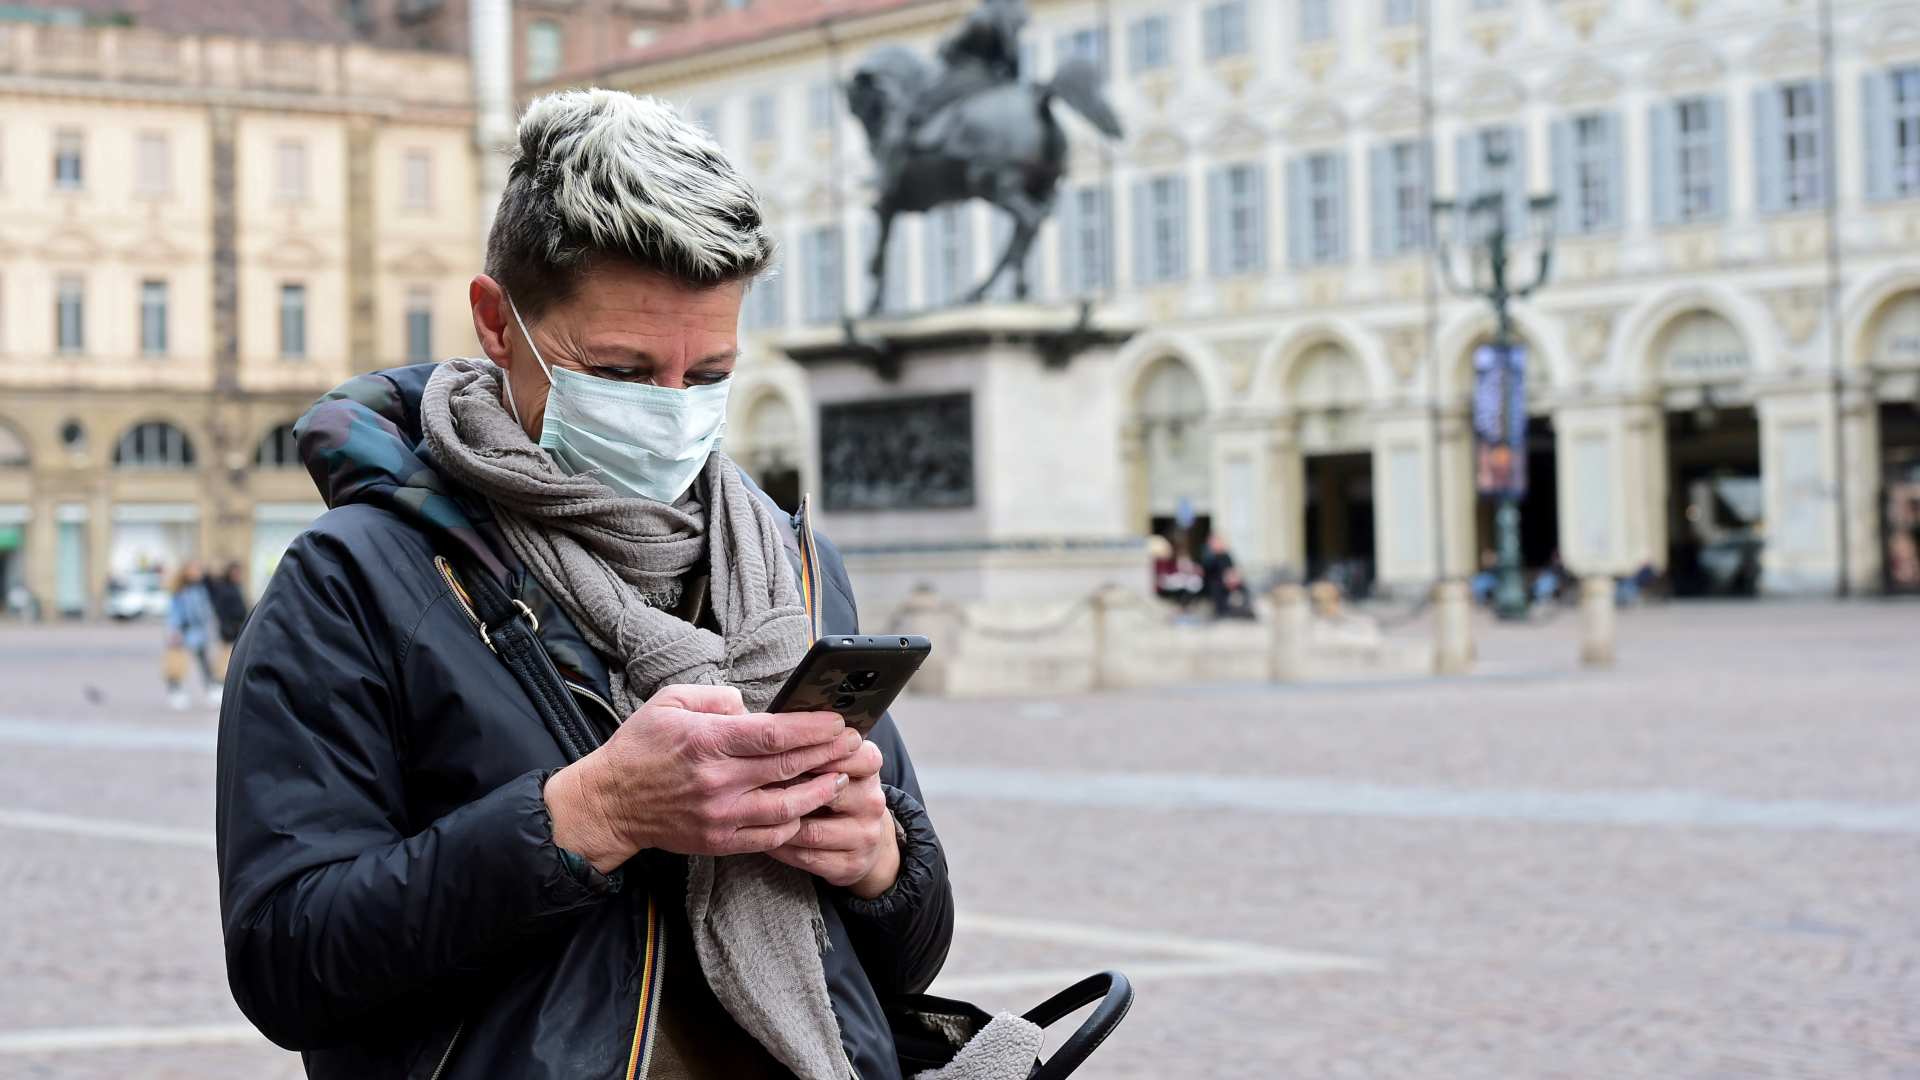 Italia usará una app para rastrear los contactos de los contagiados de coronavirus